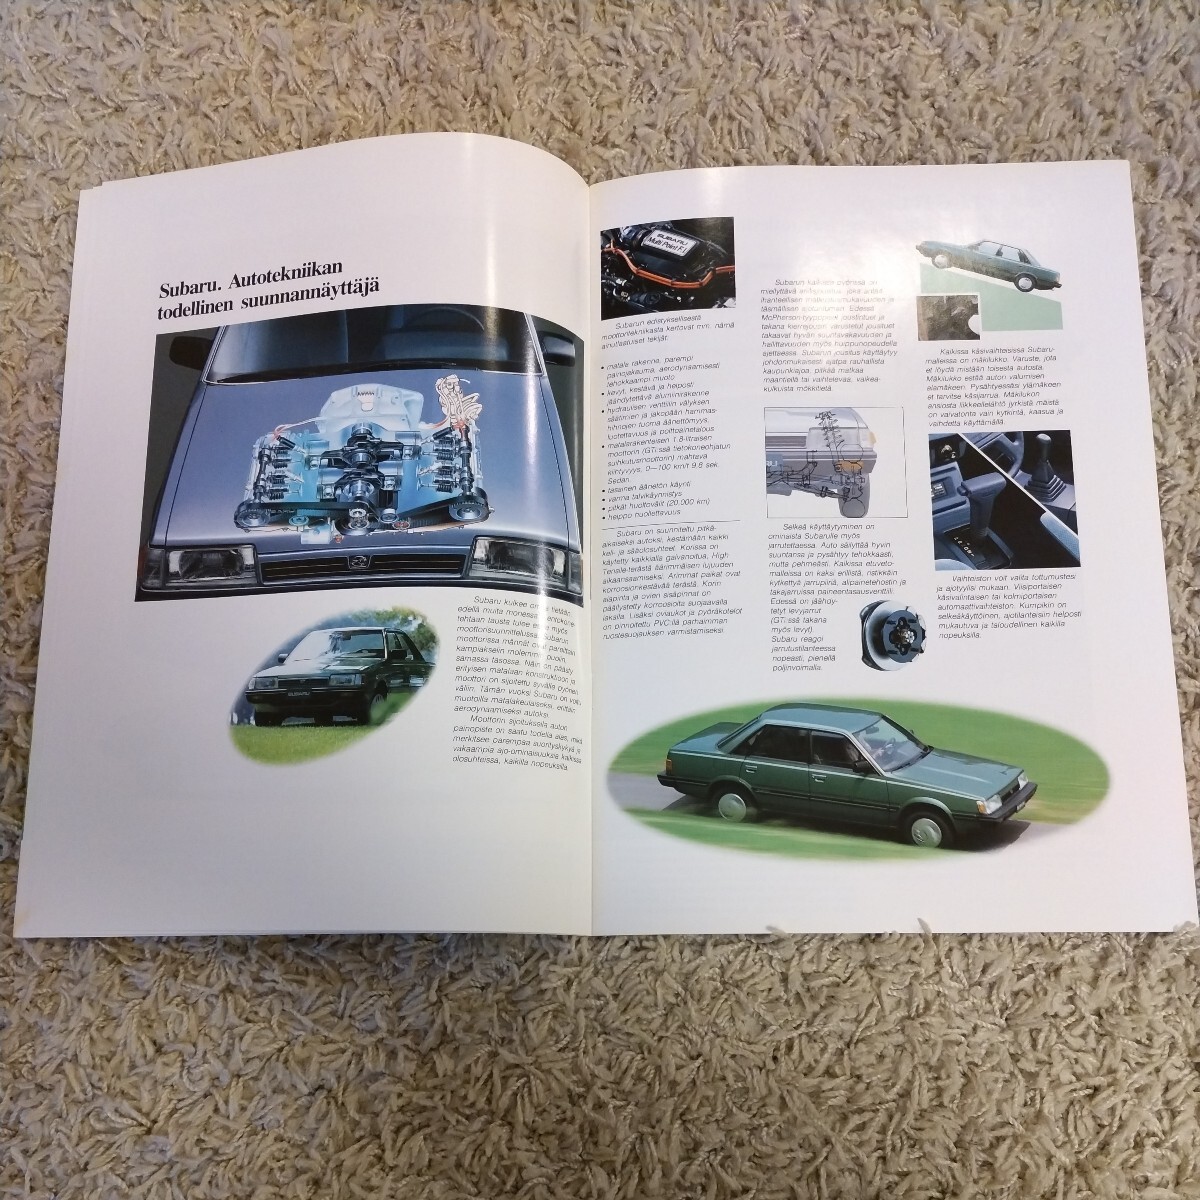  Subaru 3 generation Leone coupe catalog Finland version 